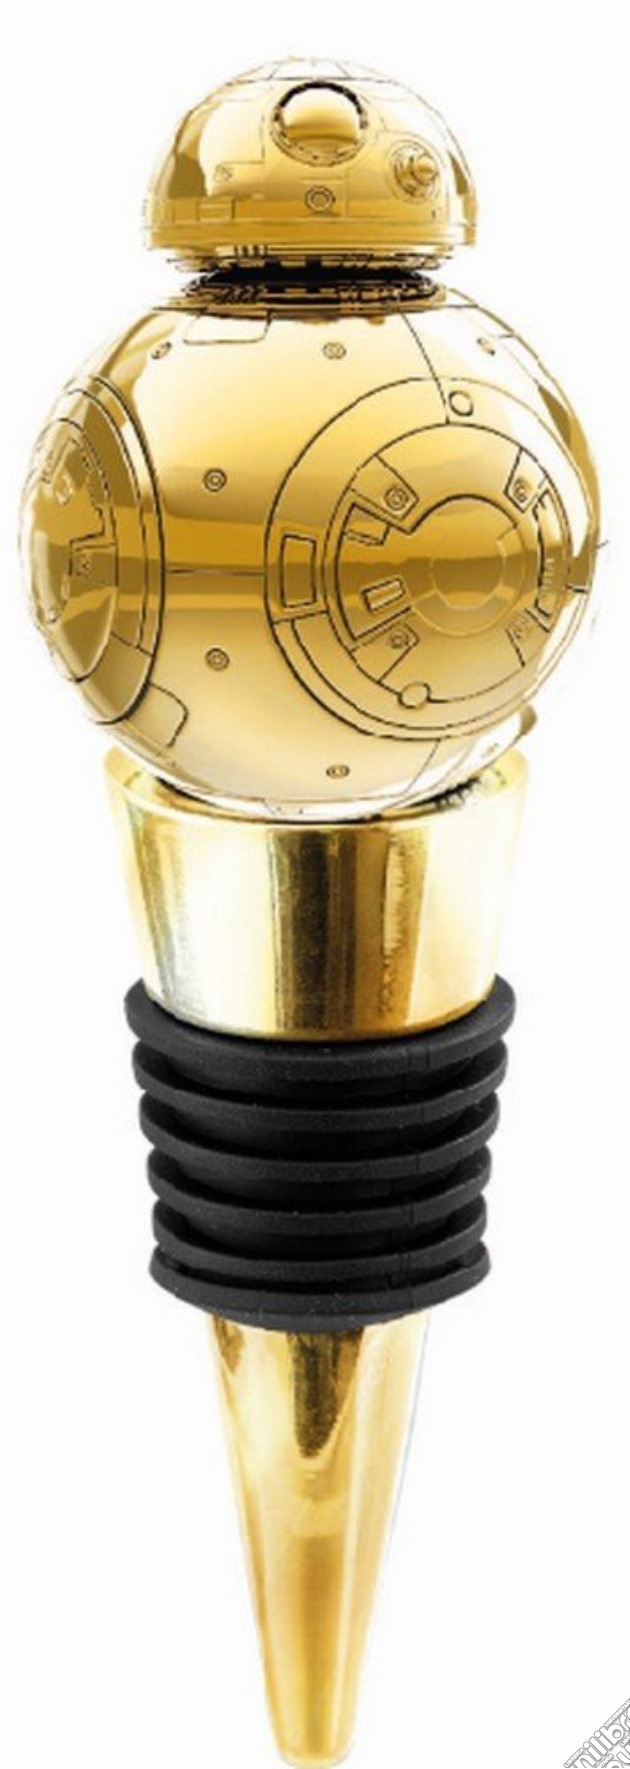 Star Wars The Last Jedi: Bb-8 Gold Bottle Stopper gioco di Funko